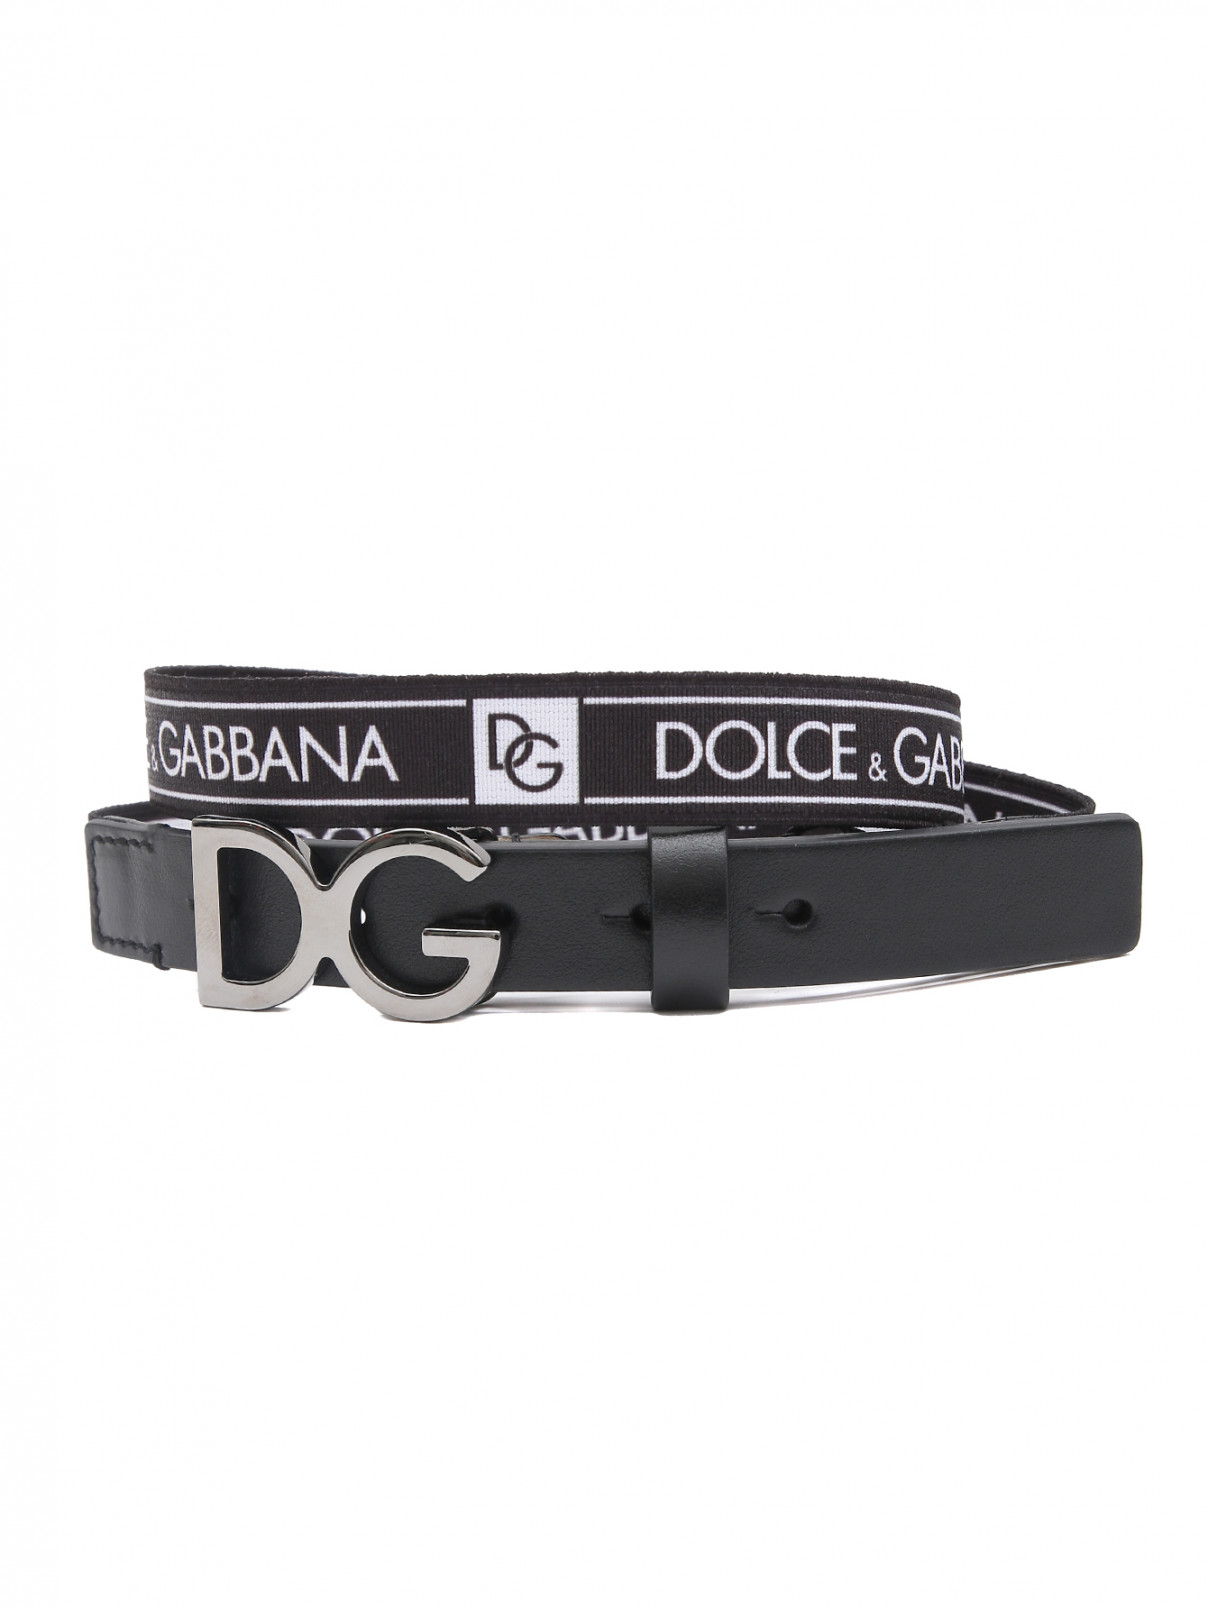 Ремень на резинке с металлической пряжкой Dolce & Gabbana  –  Общий вид  – Цвет:  Черный